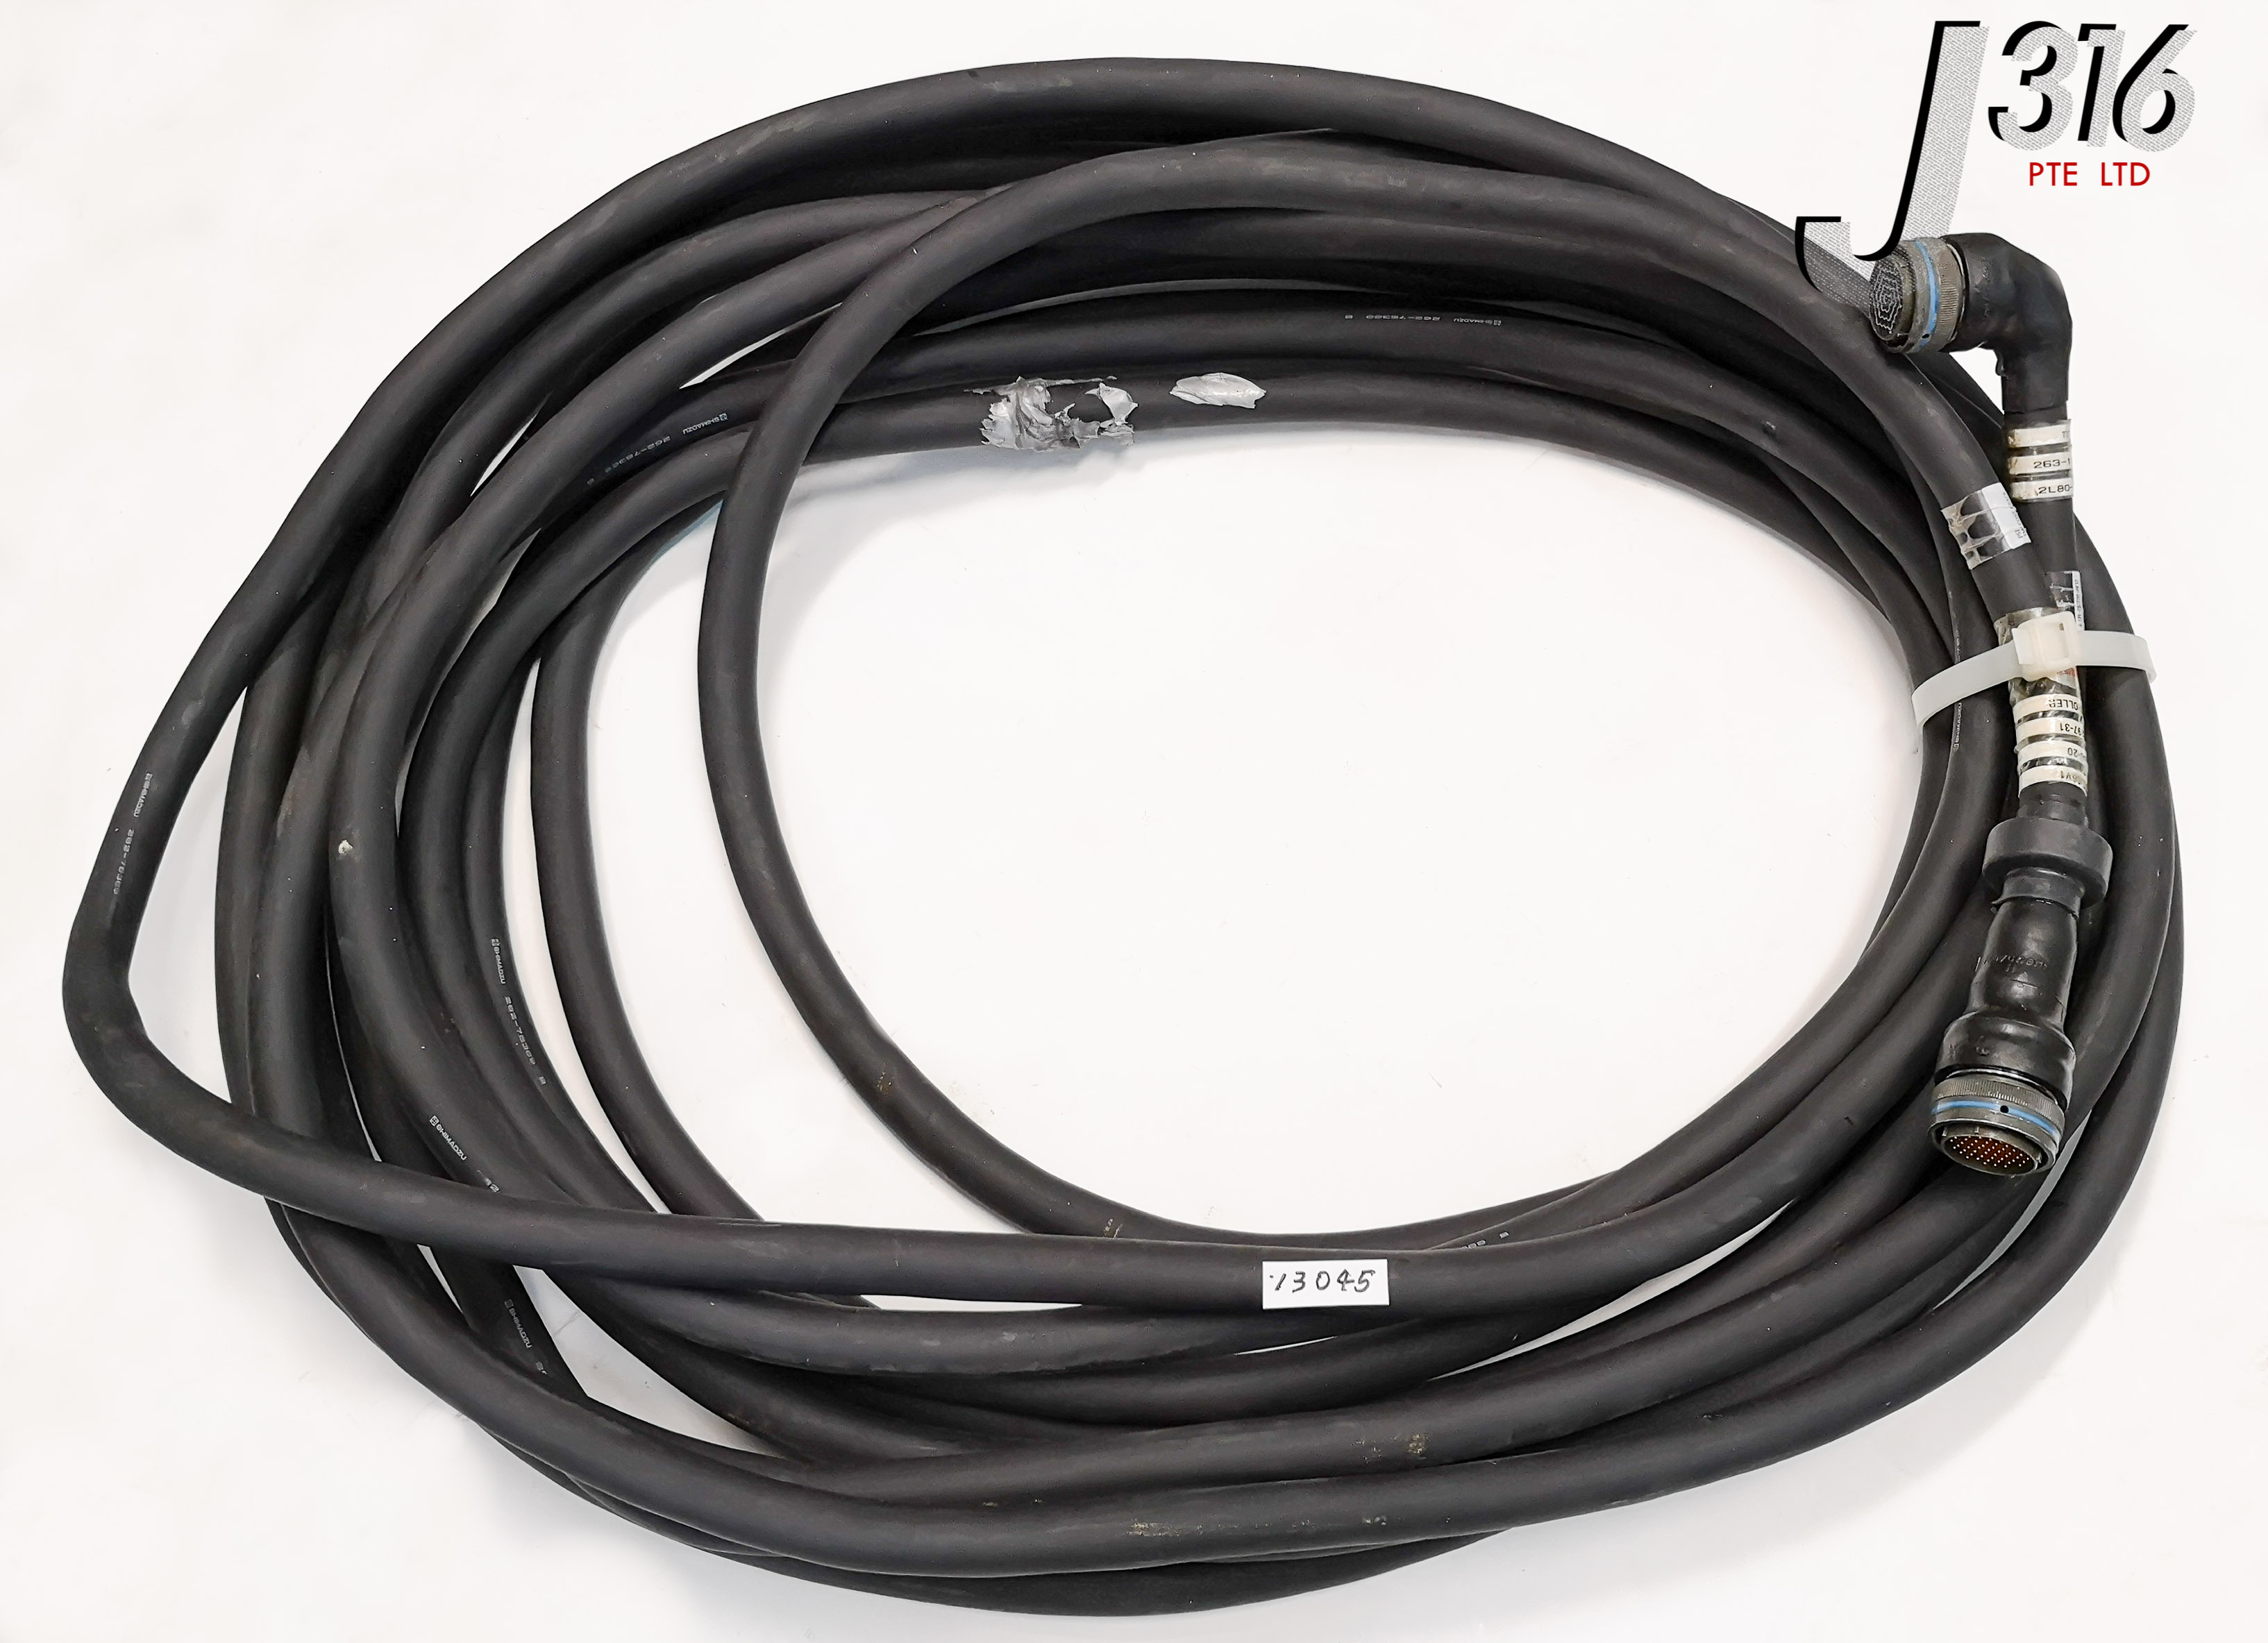 Кабель для насоса купить. Какивыглядить кабель на насос Ягуар. Track 9 Dual Turbo кабель программирования. Shimadzu управляющий кабель, длина 10м, s-s 263-16200-10.